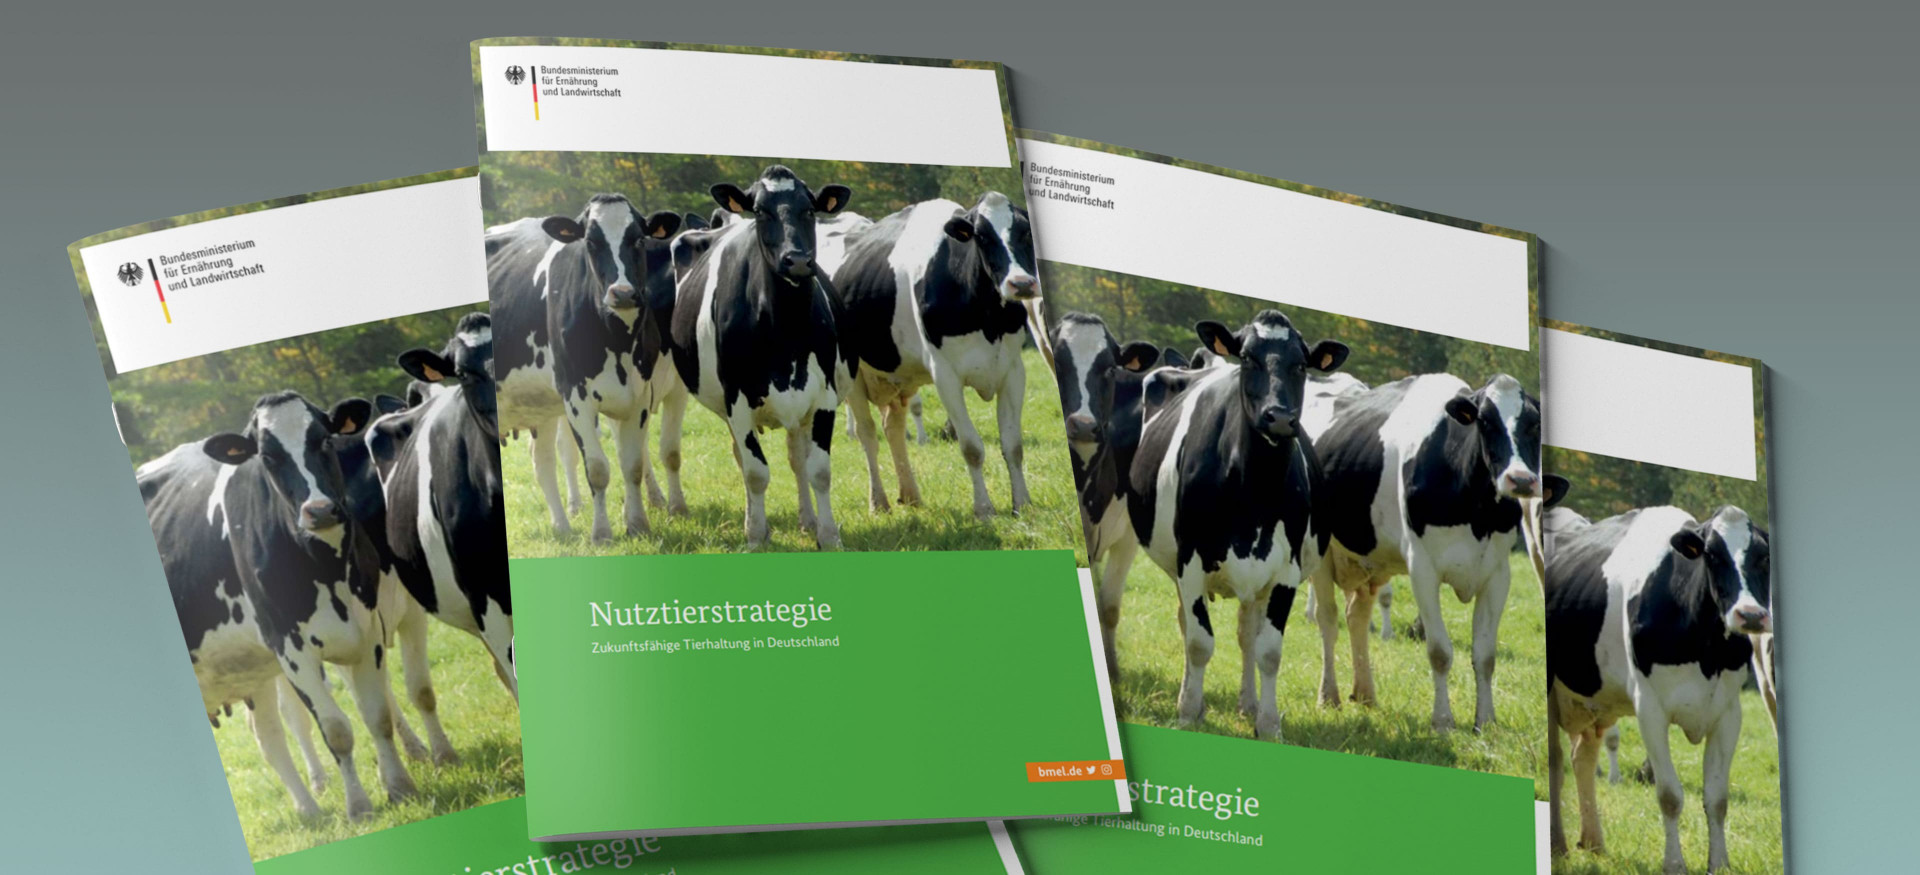 Das Bild zeigt einen Stapel Broschüren mit dem Titel "Nutztierstrategie".